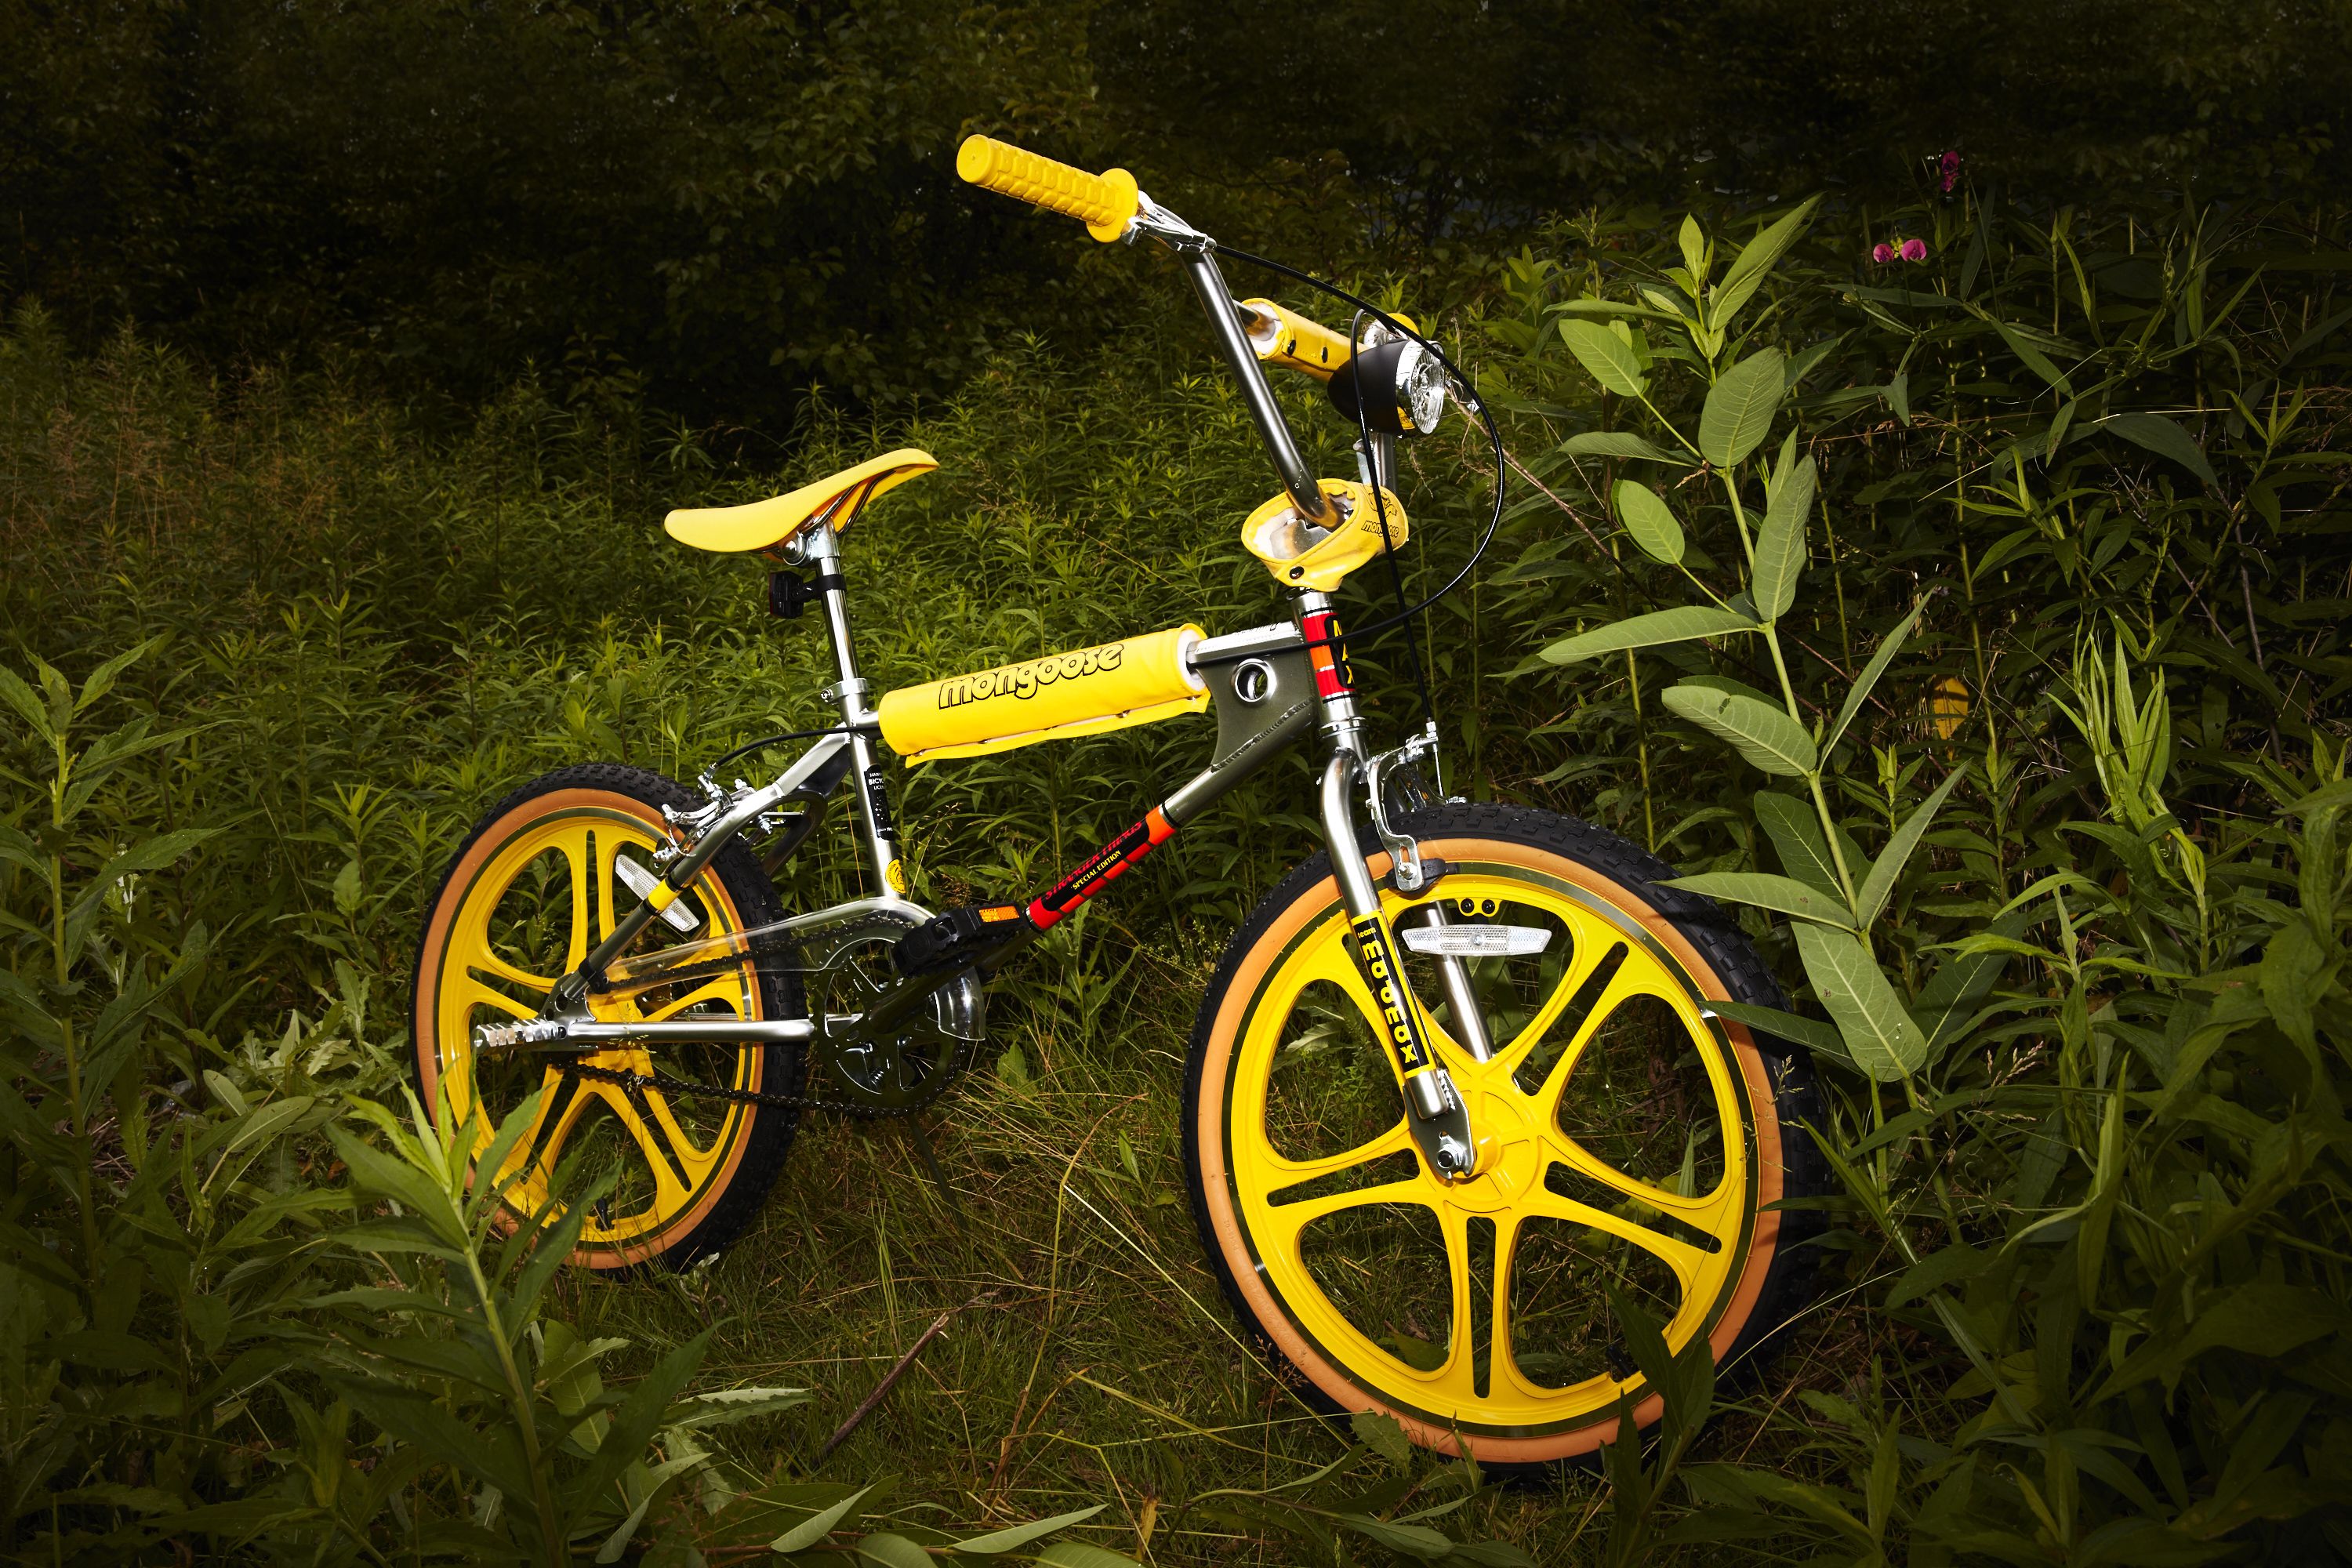 yellow mongoose bike